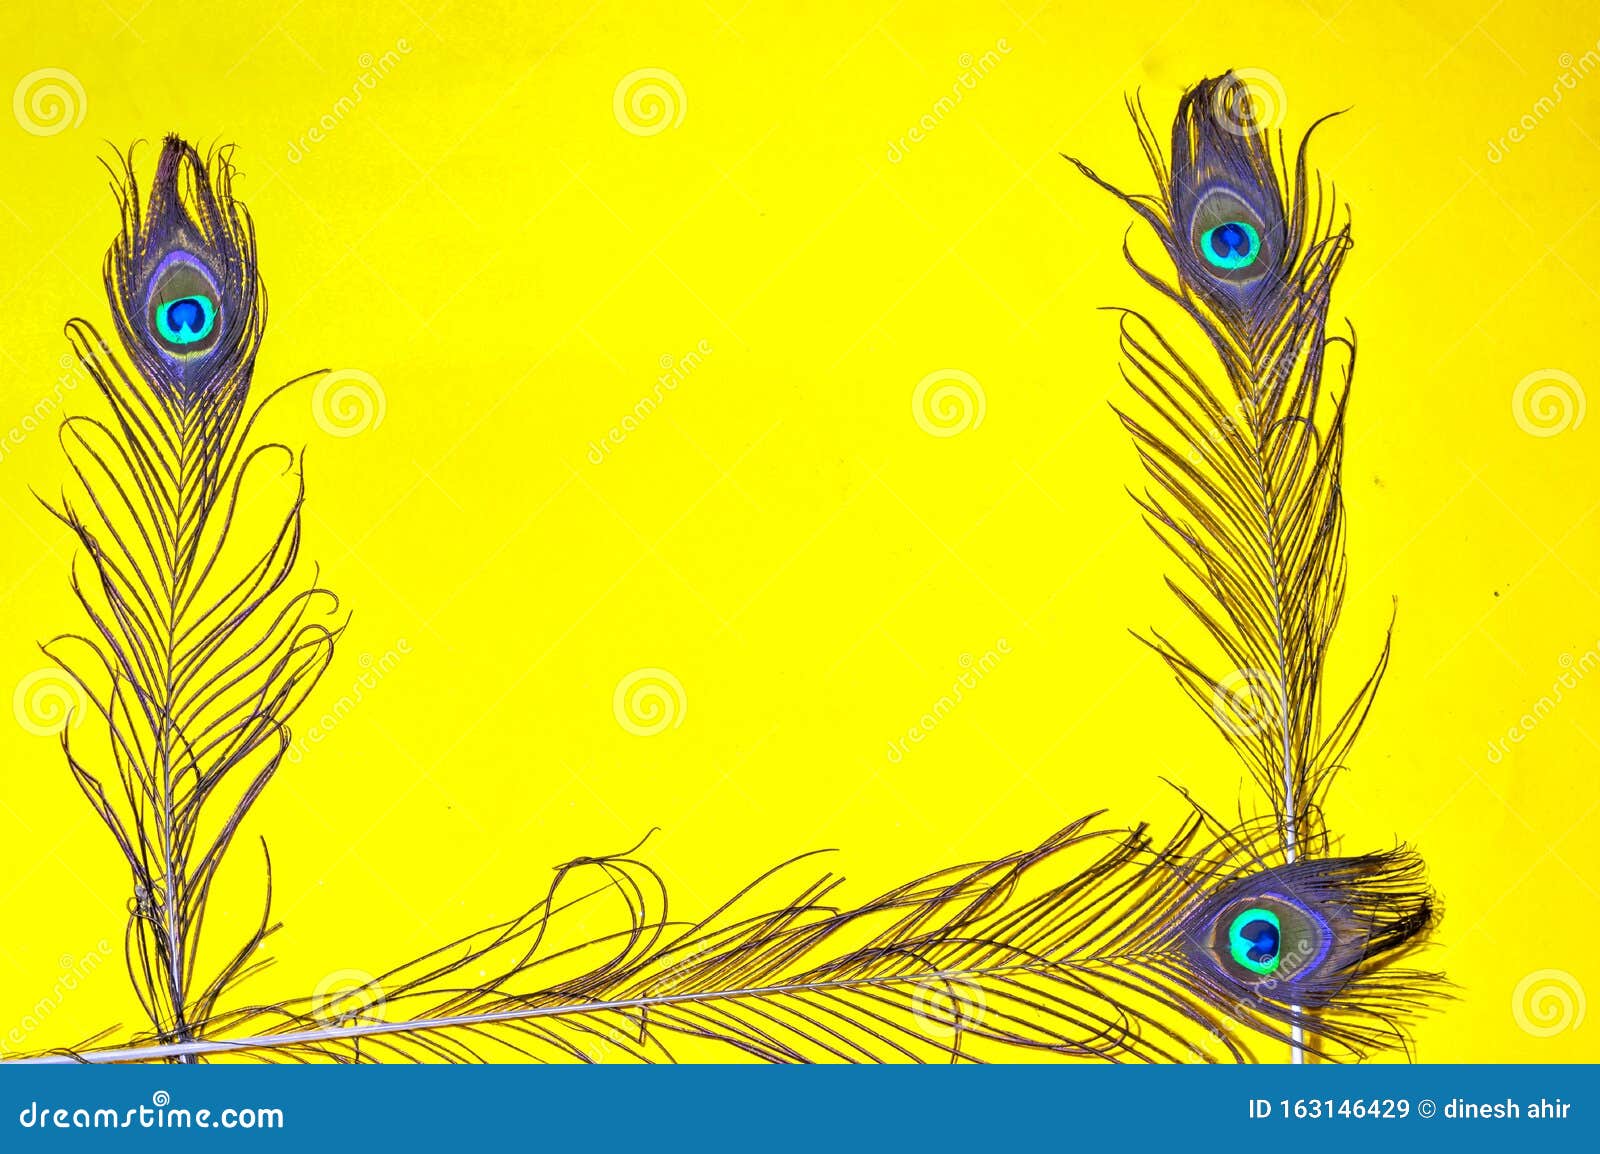 Nếu bạn đang tìm kiếm một hình nền đẹp và nổi bật cho thiết bị của mình, hãy xem qua hình ảnh về Peacock Feather Yellow Background! Với màu vàng tươi sáng và hoa văn lông vũ độc đáo của mình, hình ảnh này sẽ mang đến một phong cách độc đáo và thu hút cho thiết bị của bạn.